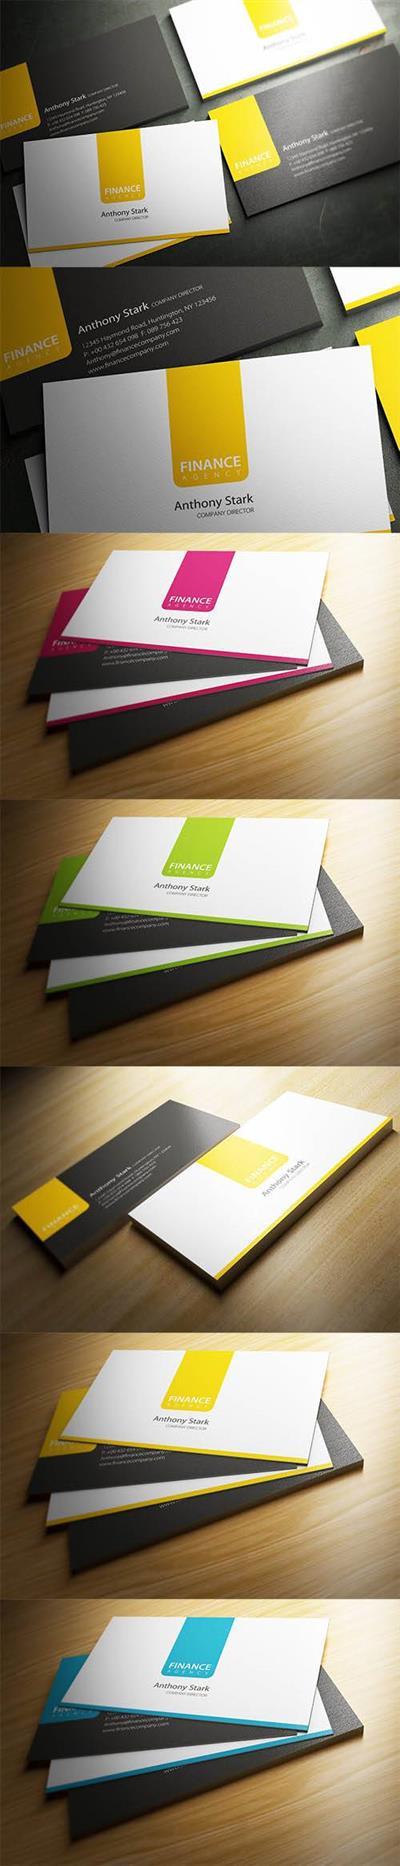 Corporate Business Card Design PSD